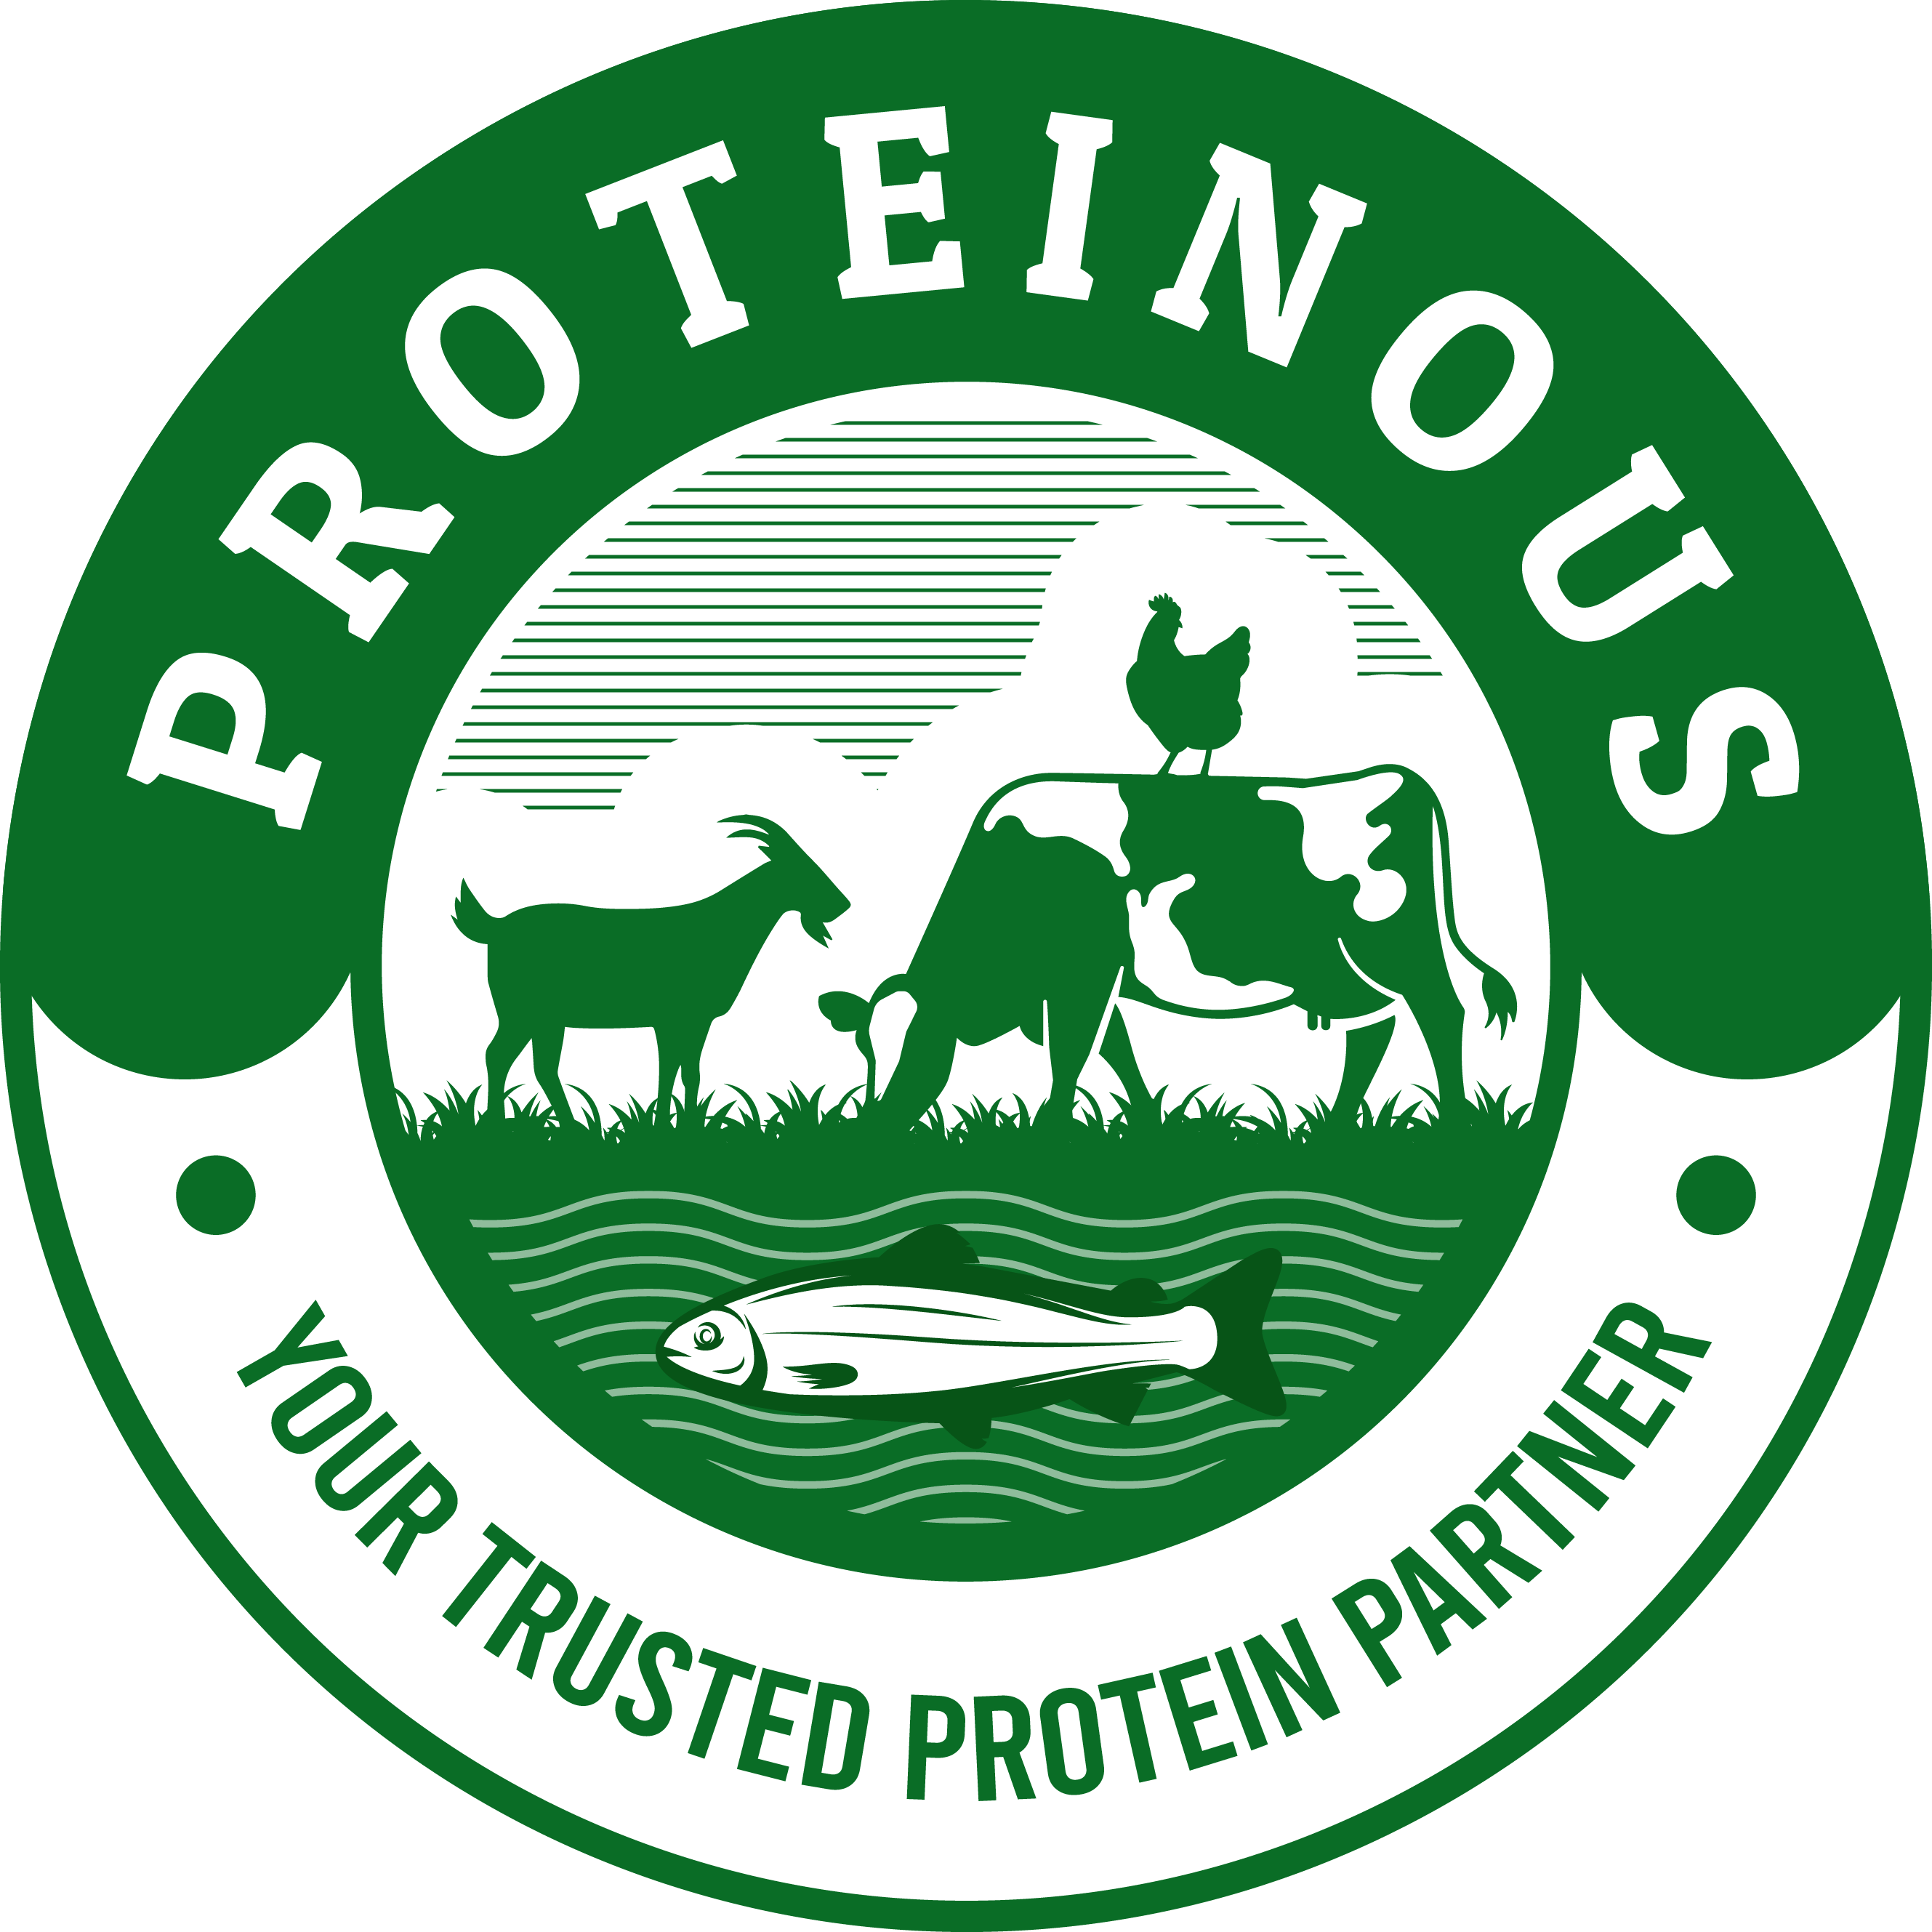 Proteinous